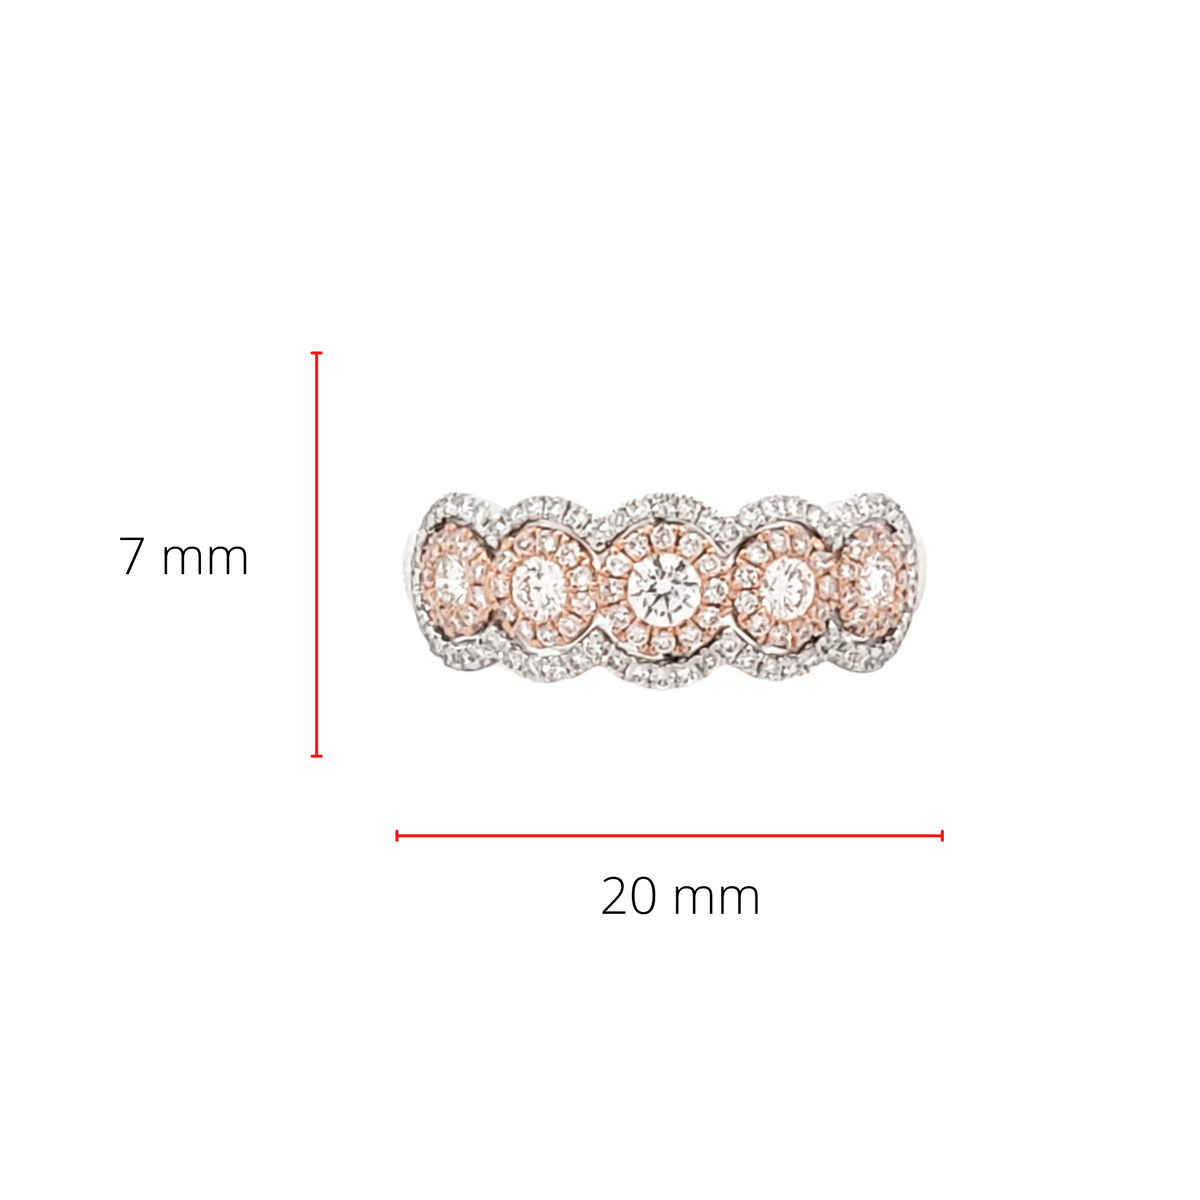 Anillo con halo de diamantes de 0,66 quilates en oro blanco y rosa de 14 quilates, talla 6